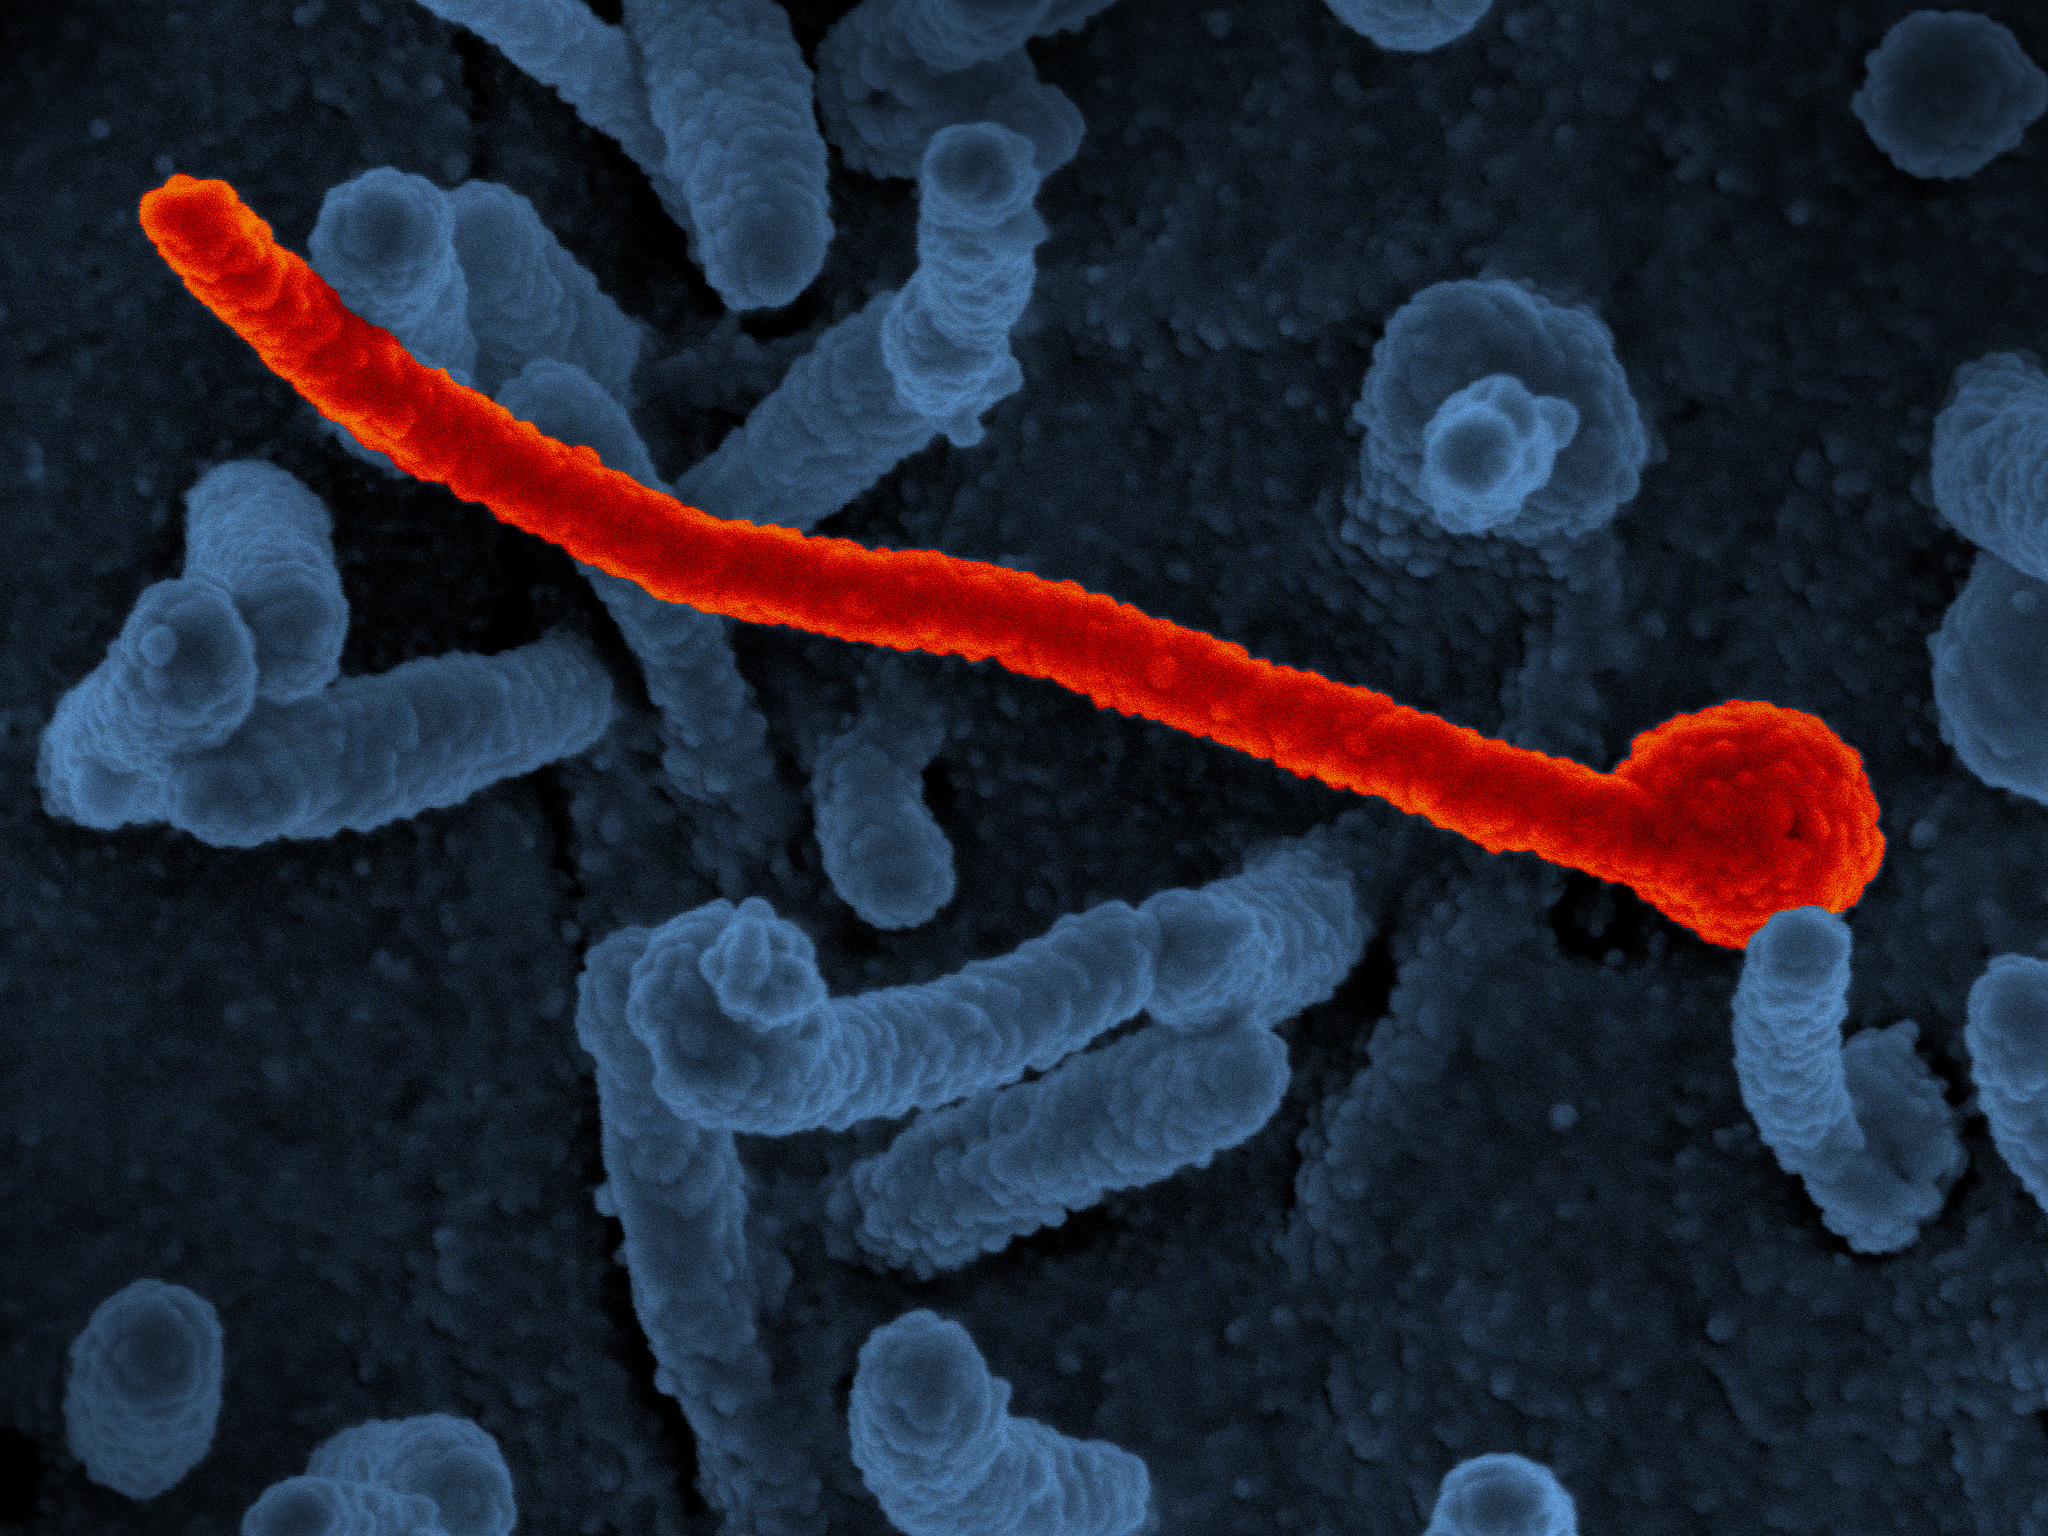 Ebola virus Makona from West African Epidemic